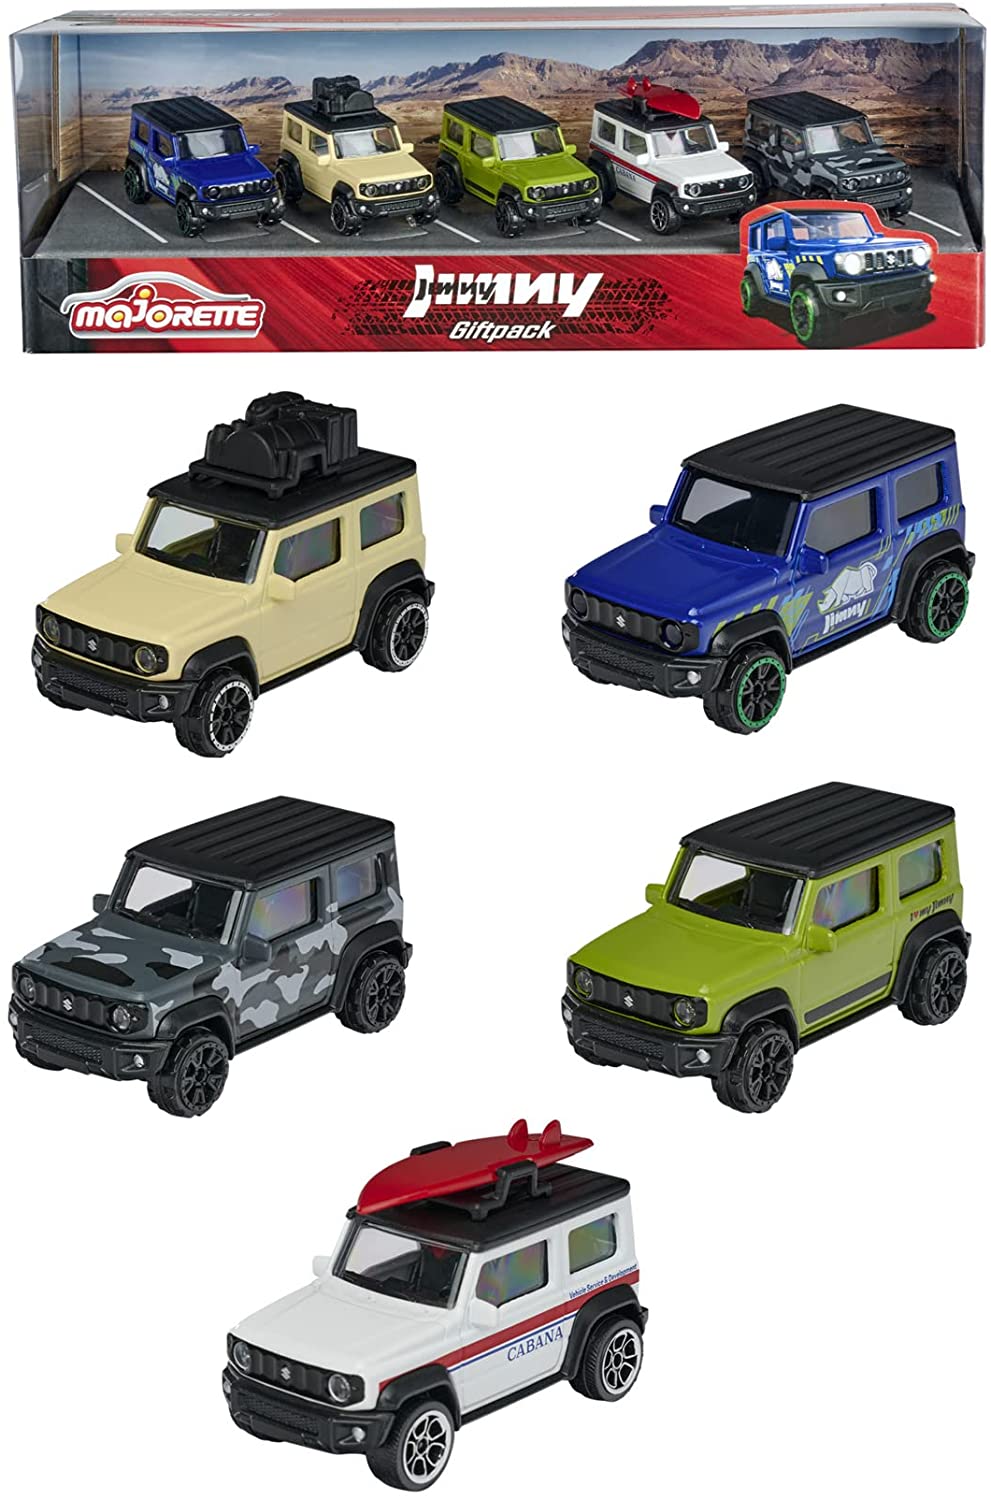 Majorette 212053177 Suzuki Jimny Geschenkset – Set mit 5 SUV-Modellen, Spielzeugautos aus Metall, Offroad, für Mädchen und Jungen